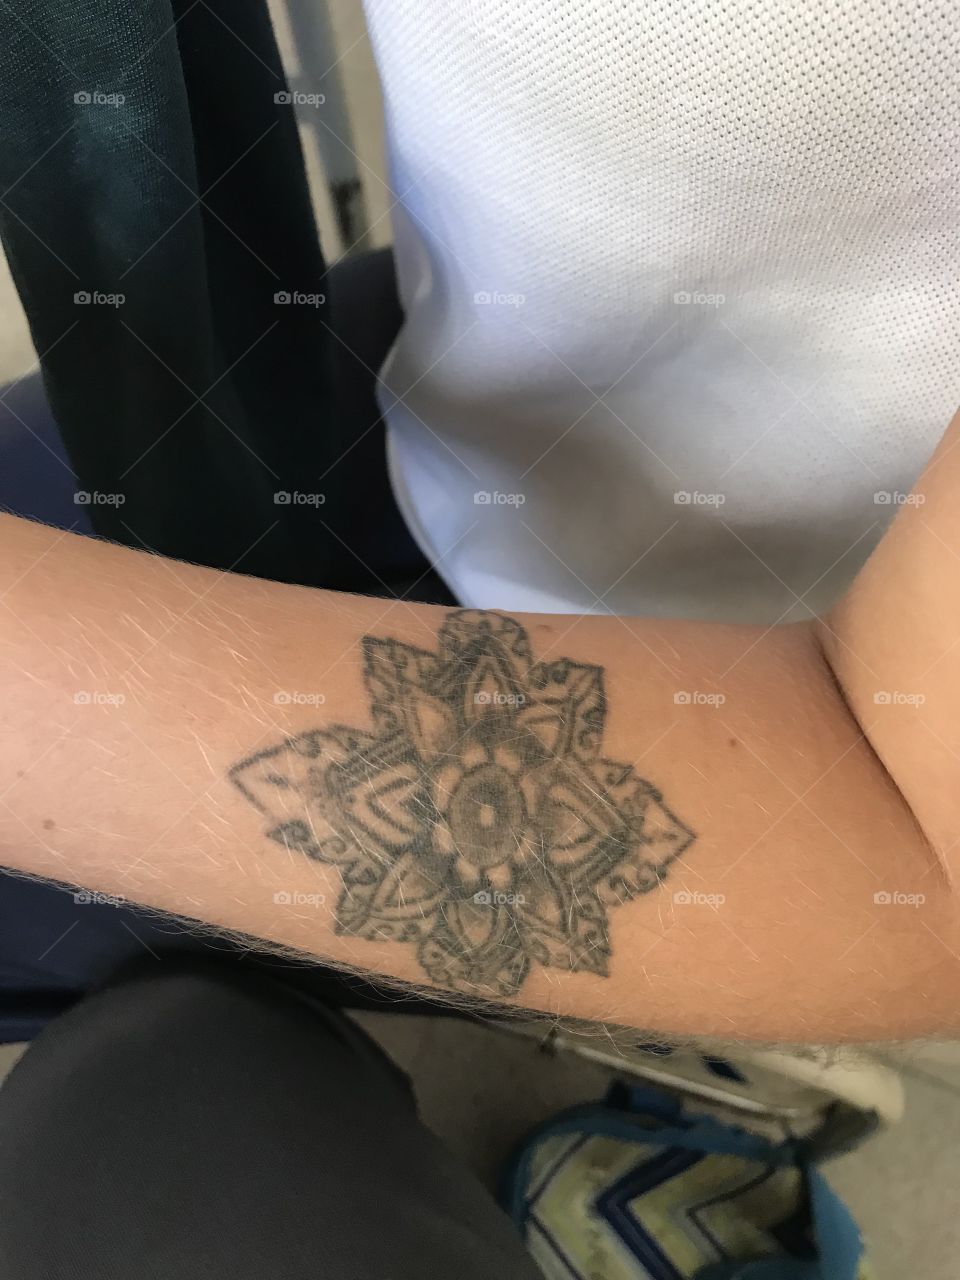 Tatuaje de mandala en brazo de mujer joven 